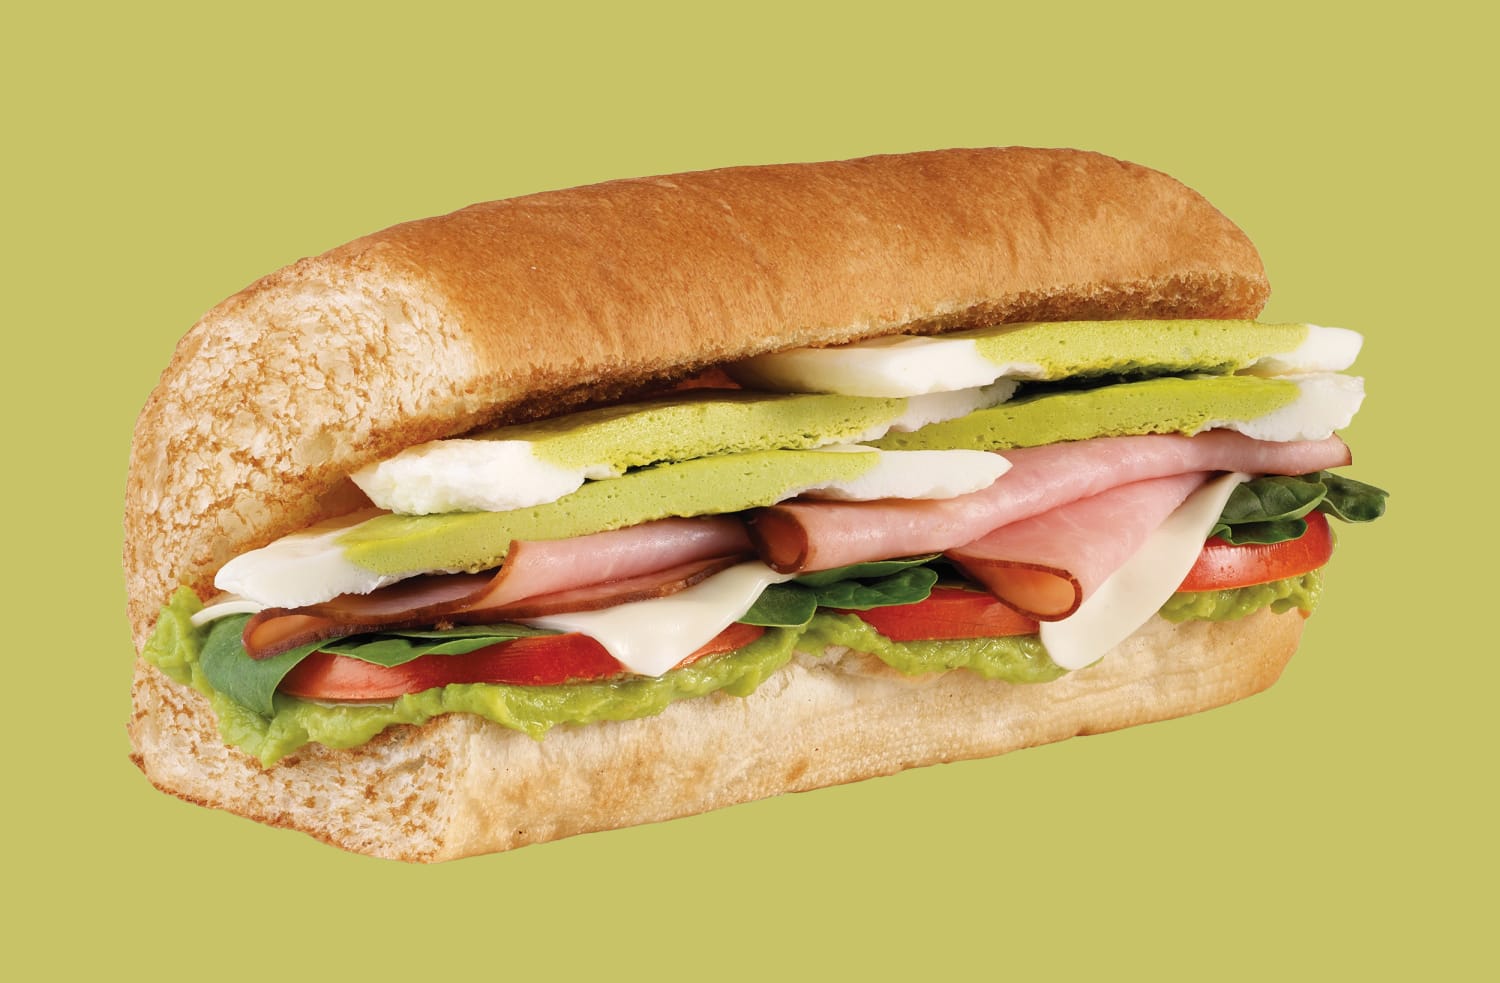 Subway Ham Sandwich